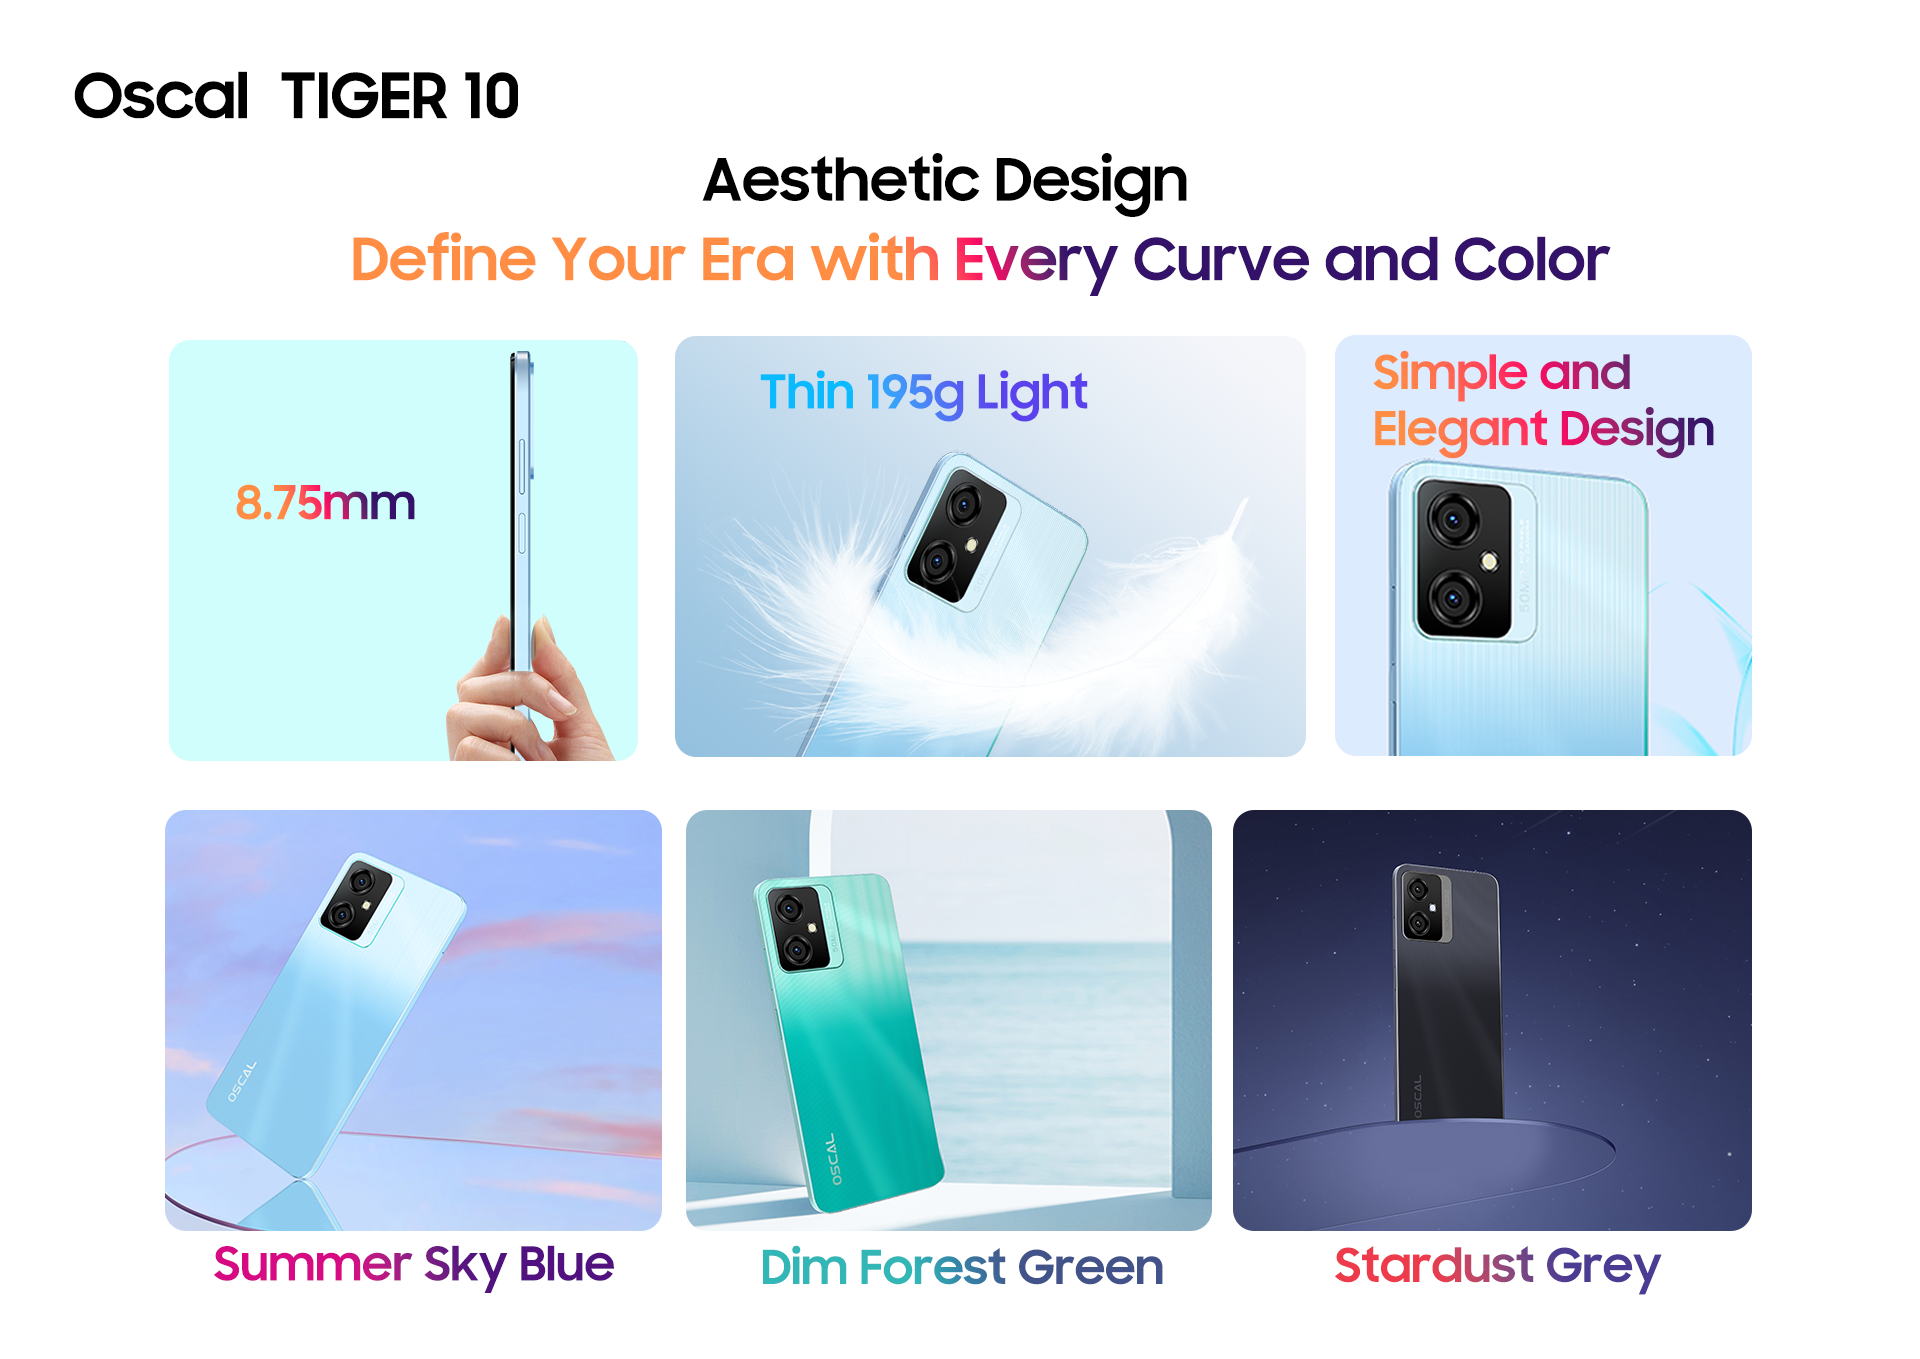 Diseño y colores del celular Oscal TIGER 10